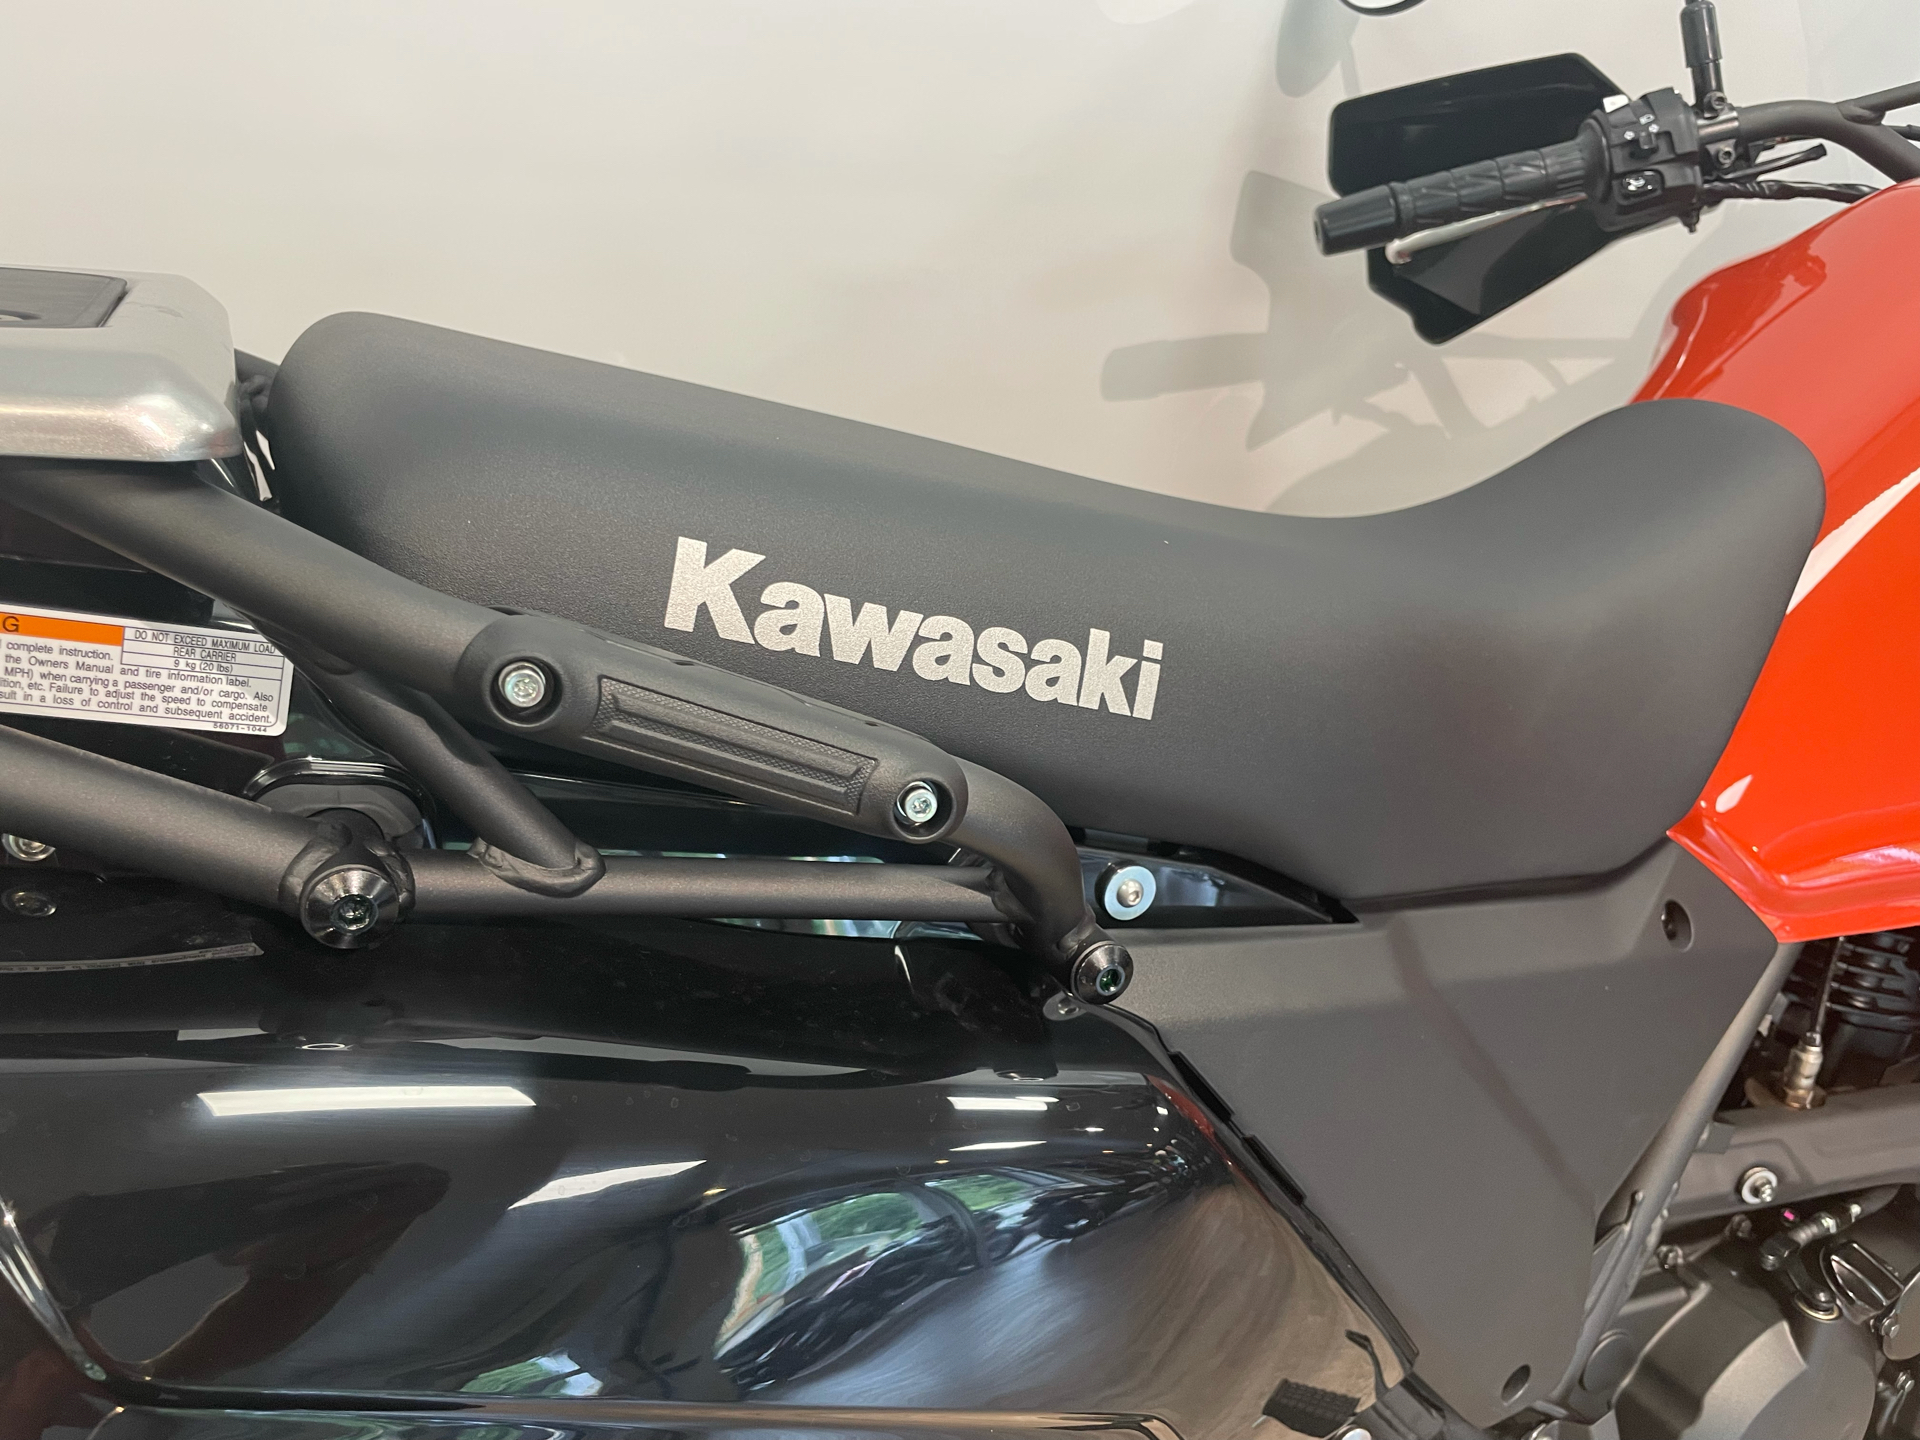 2022 Kawasaki KLR 650 in Bartonsville, Pennsylvania - Photo 14